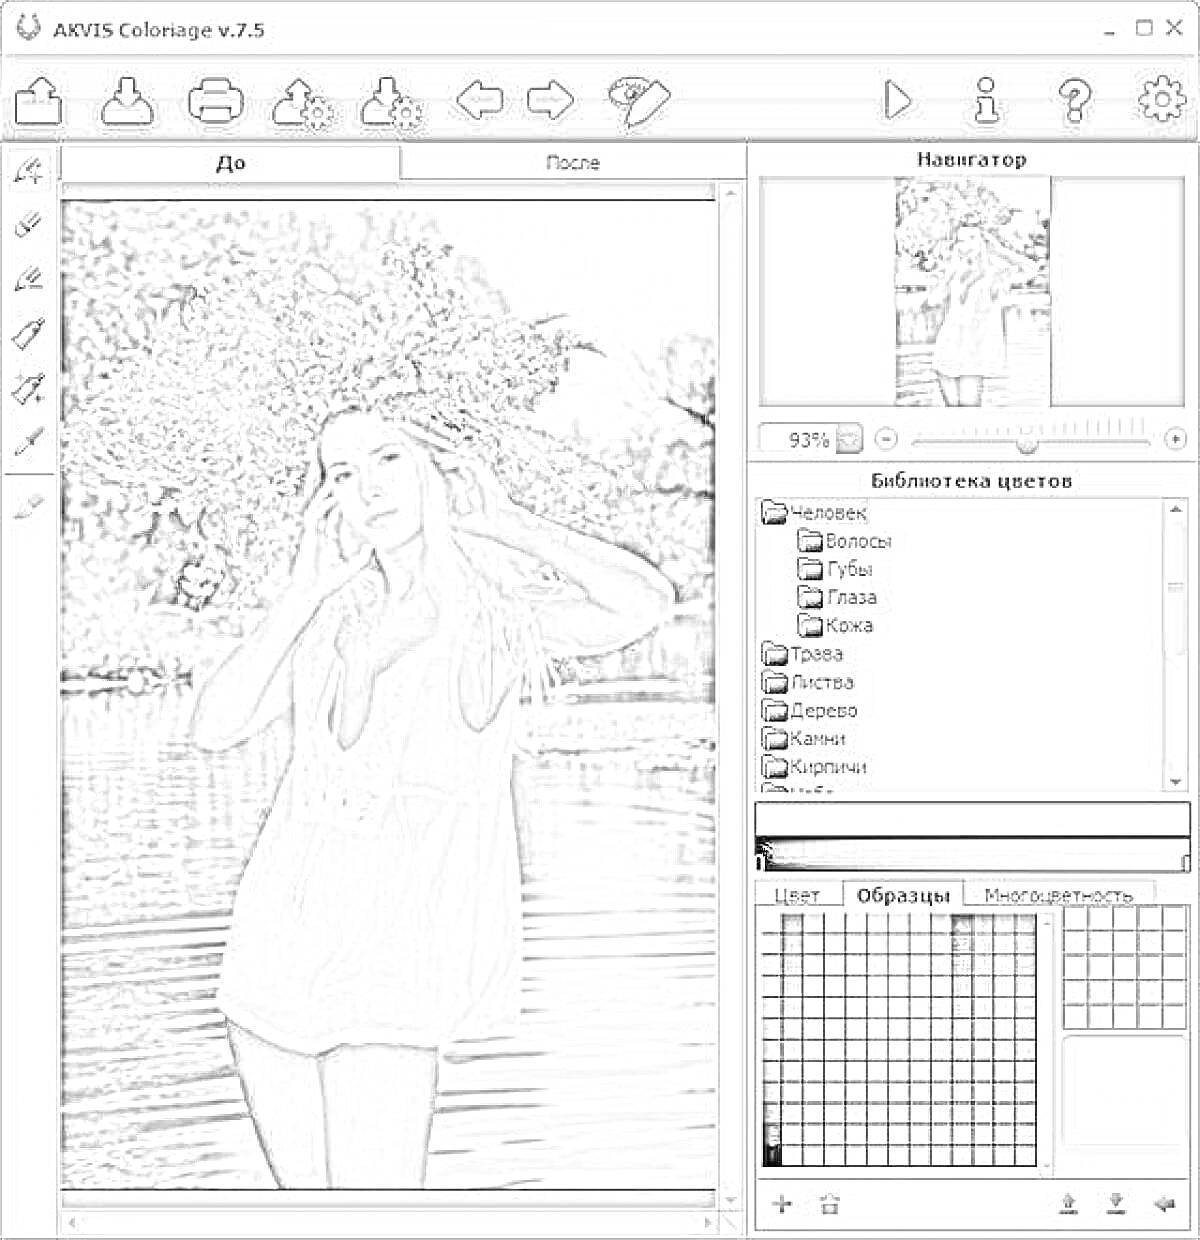 Раскраска AKVIS Coloriage v7.0 - интерфейс программы с изображением девушки в белом платье и венком из цветов, стоящей у водоема